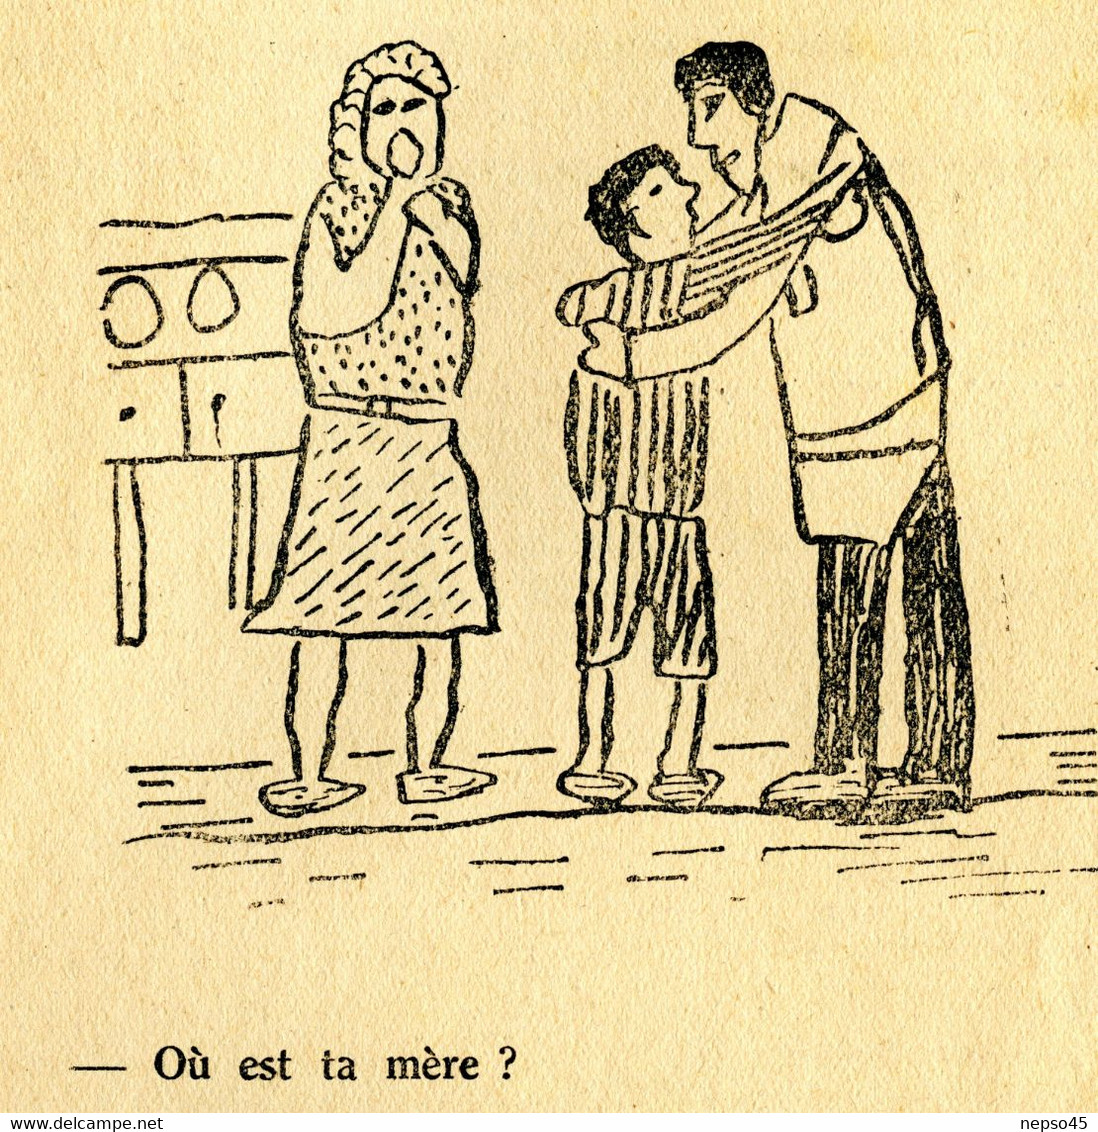 enfantines.maison d'enfants de fusillés et déportés de Ville-d'-Avray Seine et Oise. DÉPORTÉ ! dessins d'élèves.1946.